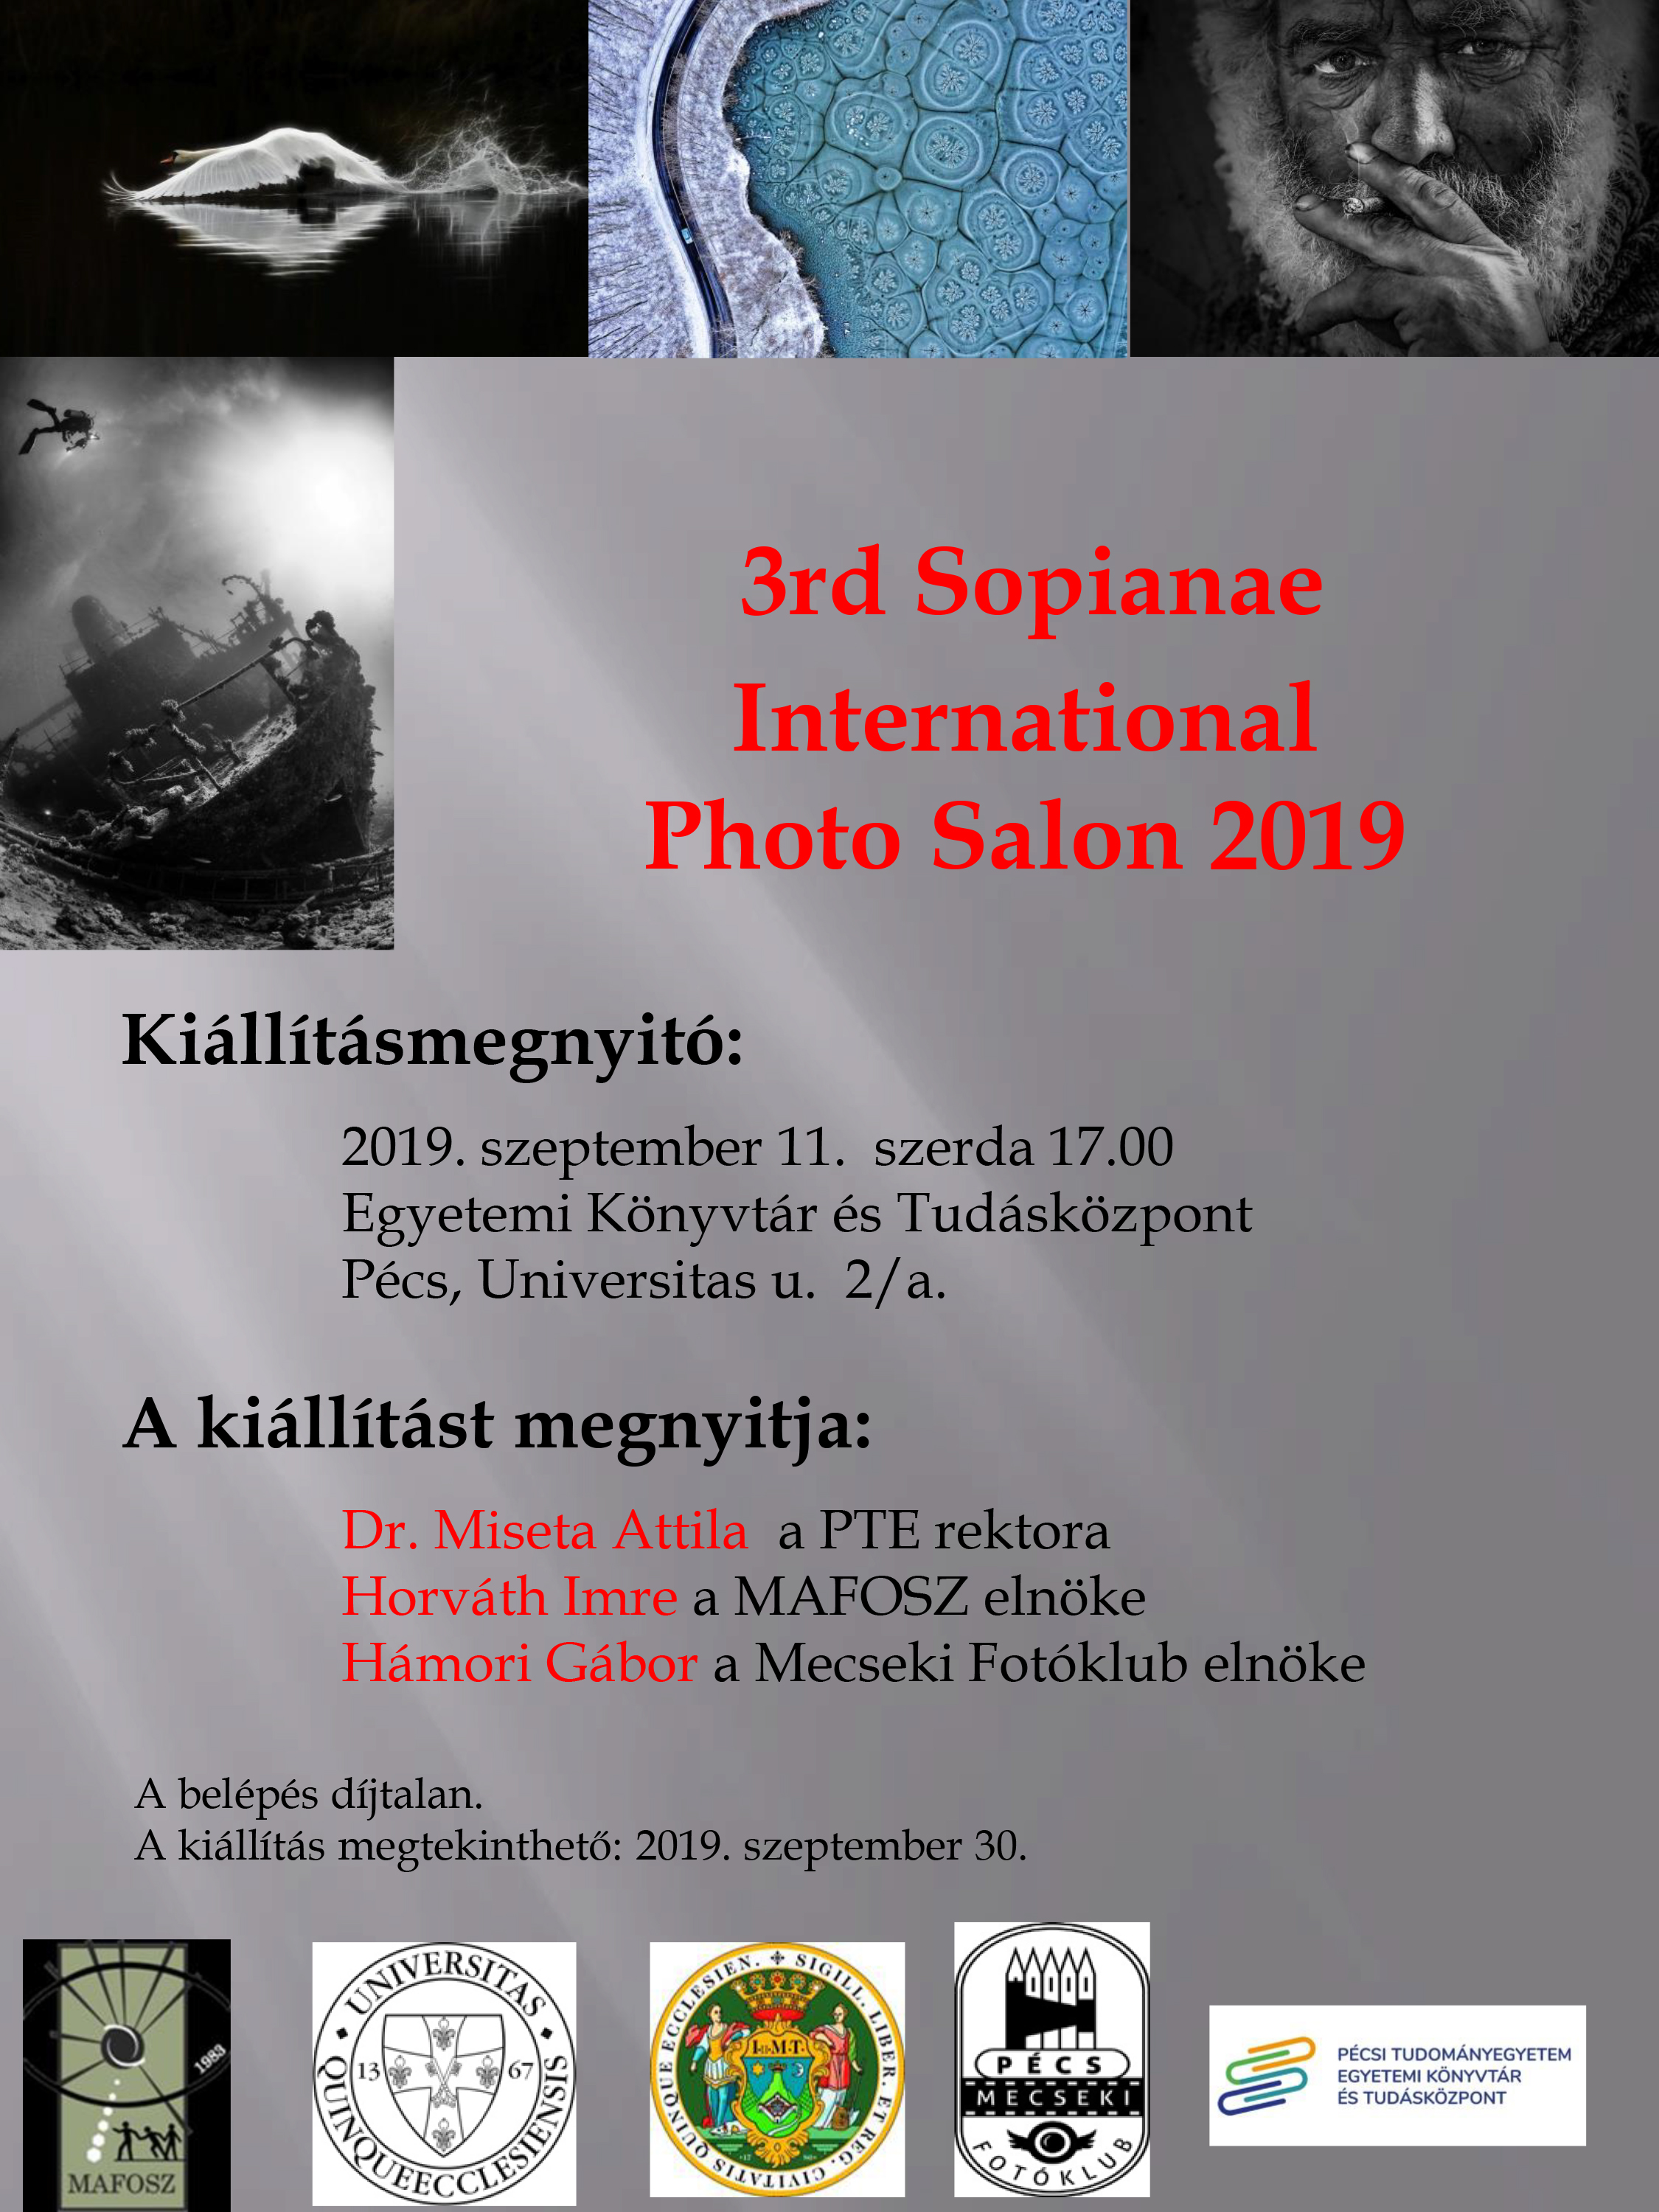 Kiállításmegnyitó - 3rd Sopianae International Photo Salon 2019.